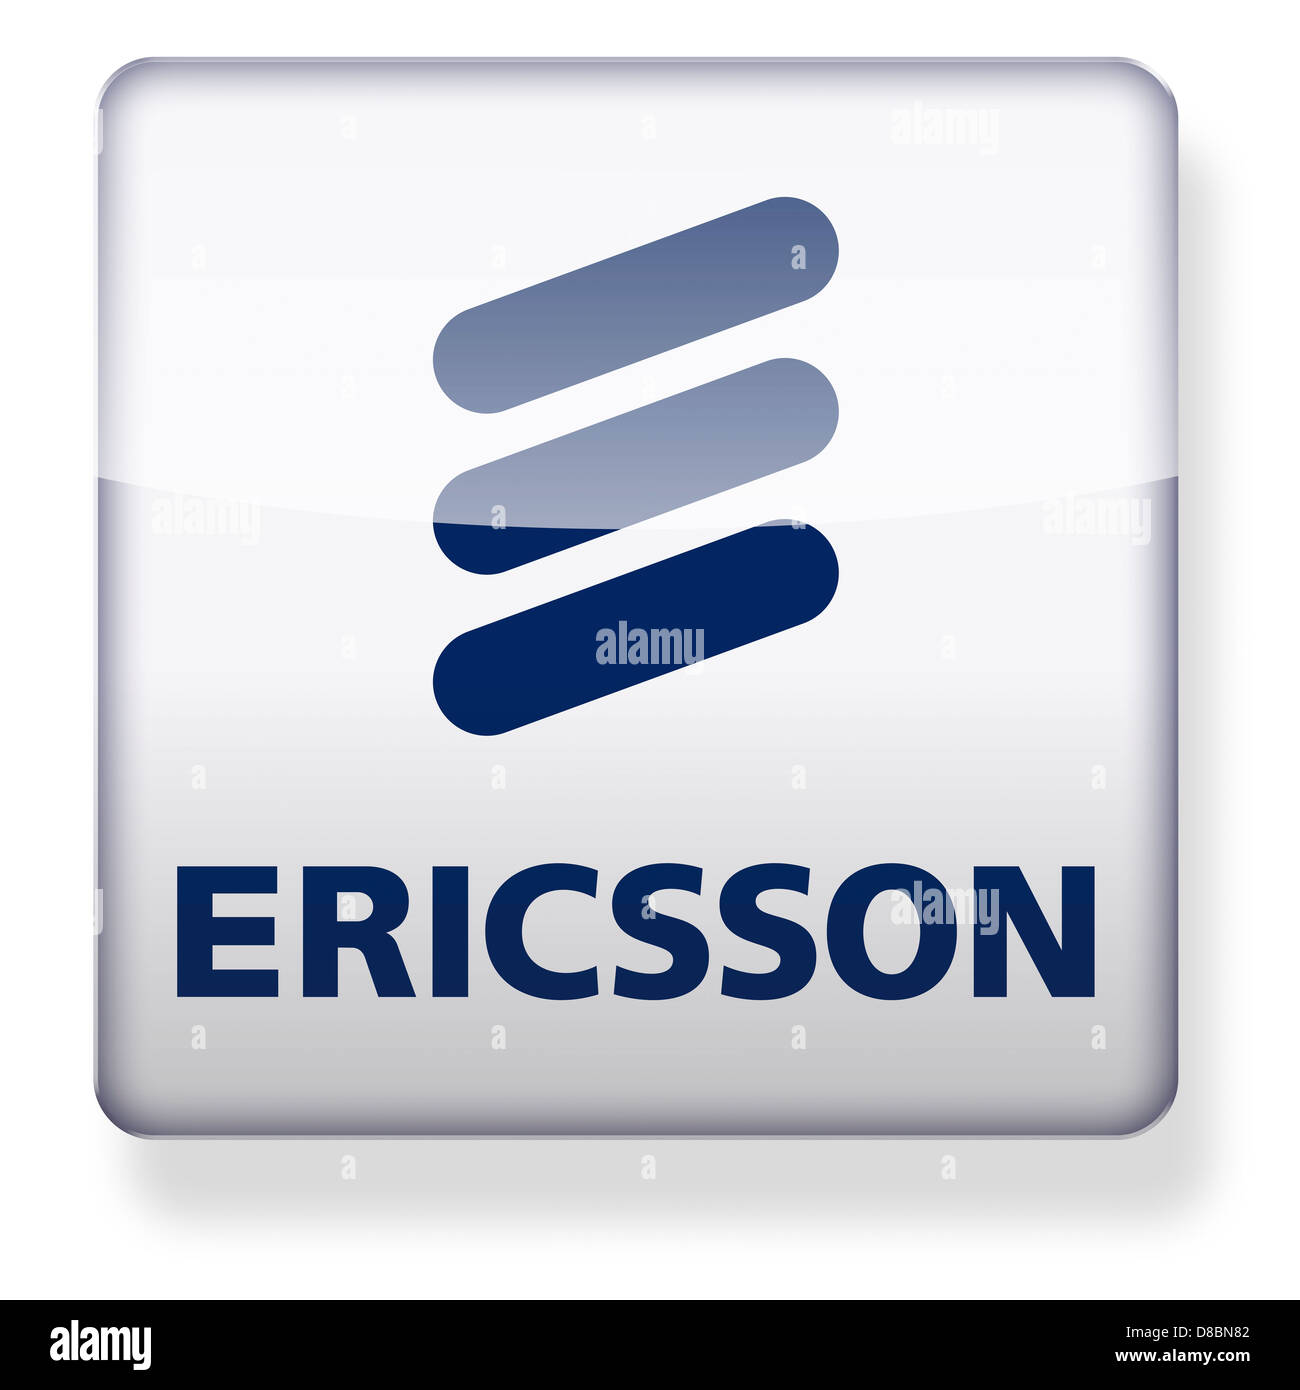 Ericsson logo come l'icona di un'app. Percorso di clipping incluso. Foto Stock